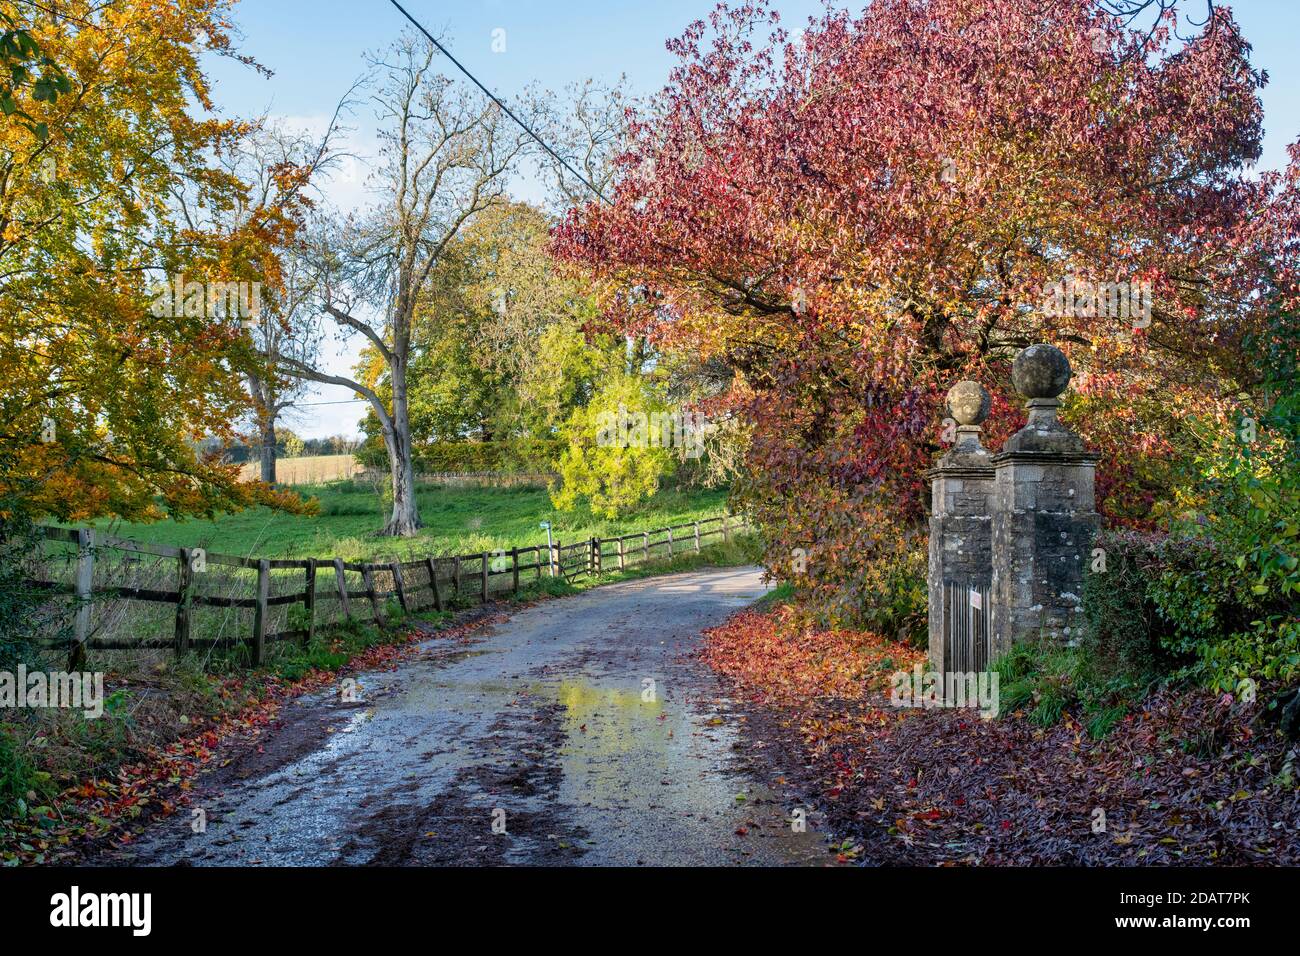 Route de campagne d'automne dans le village de Cornwell, dans les cotswolds. Cornwell, Oxfordshire, Cotswolds, Angleterre Banque D'Images